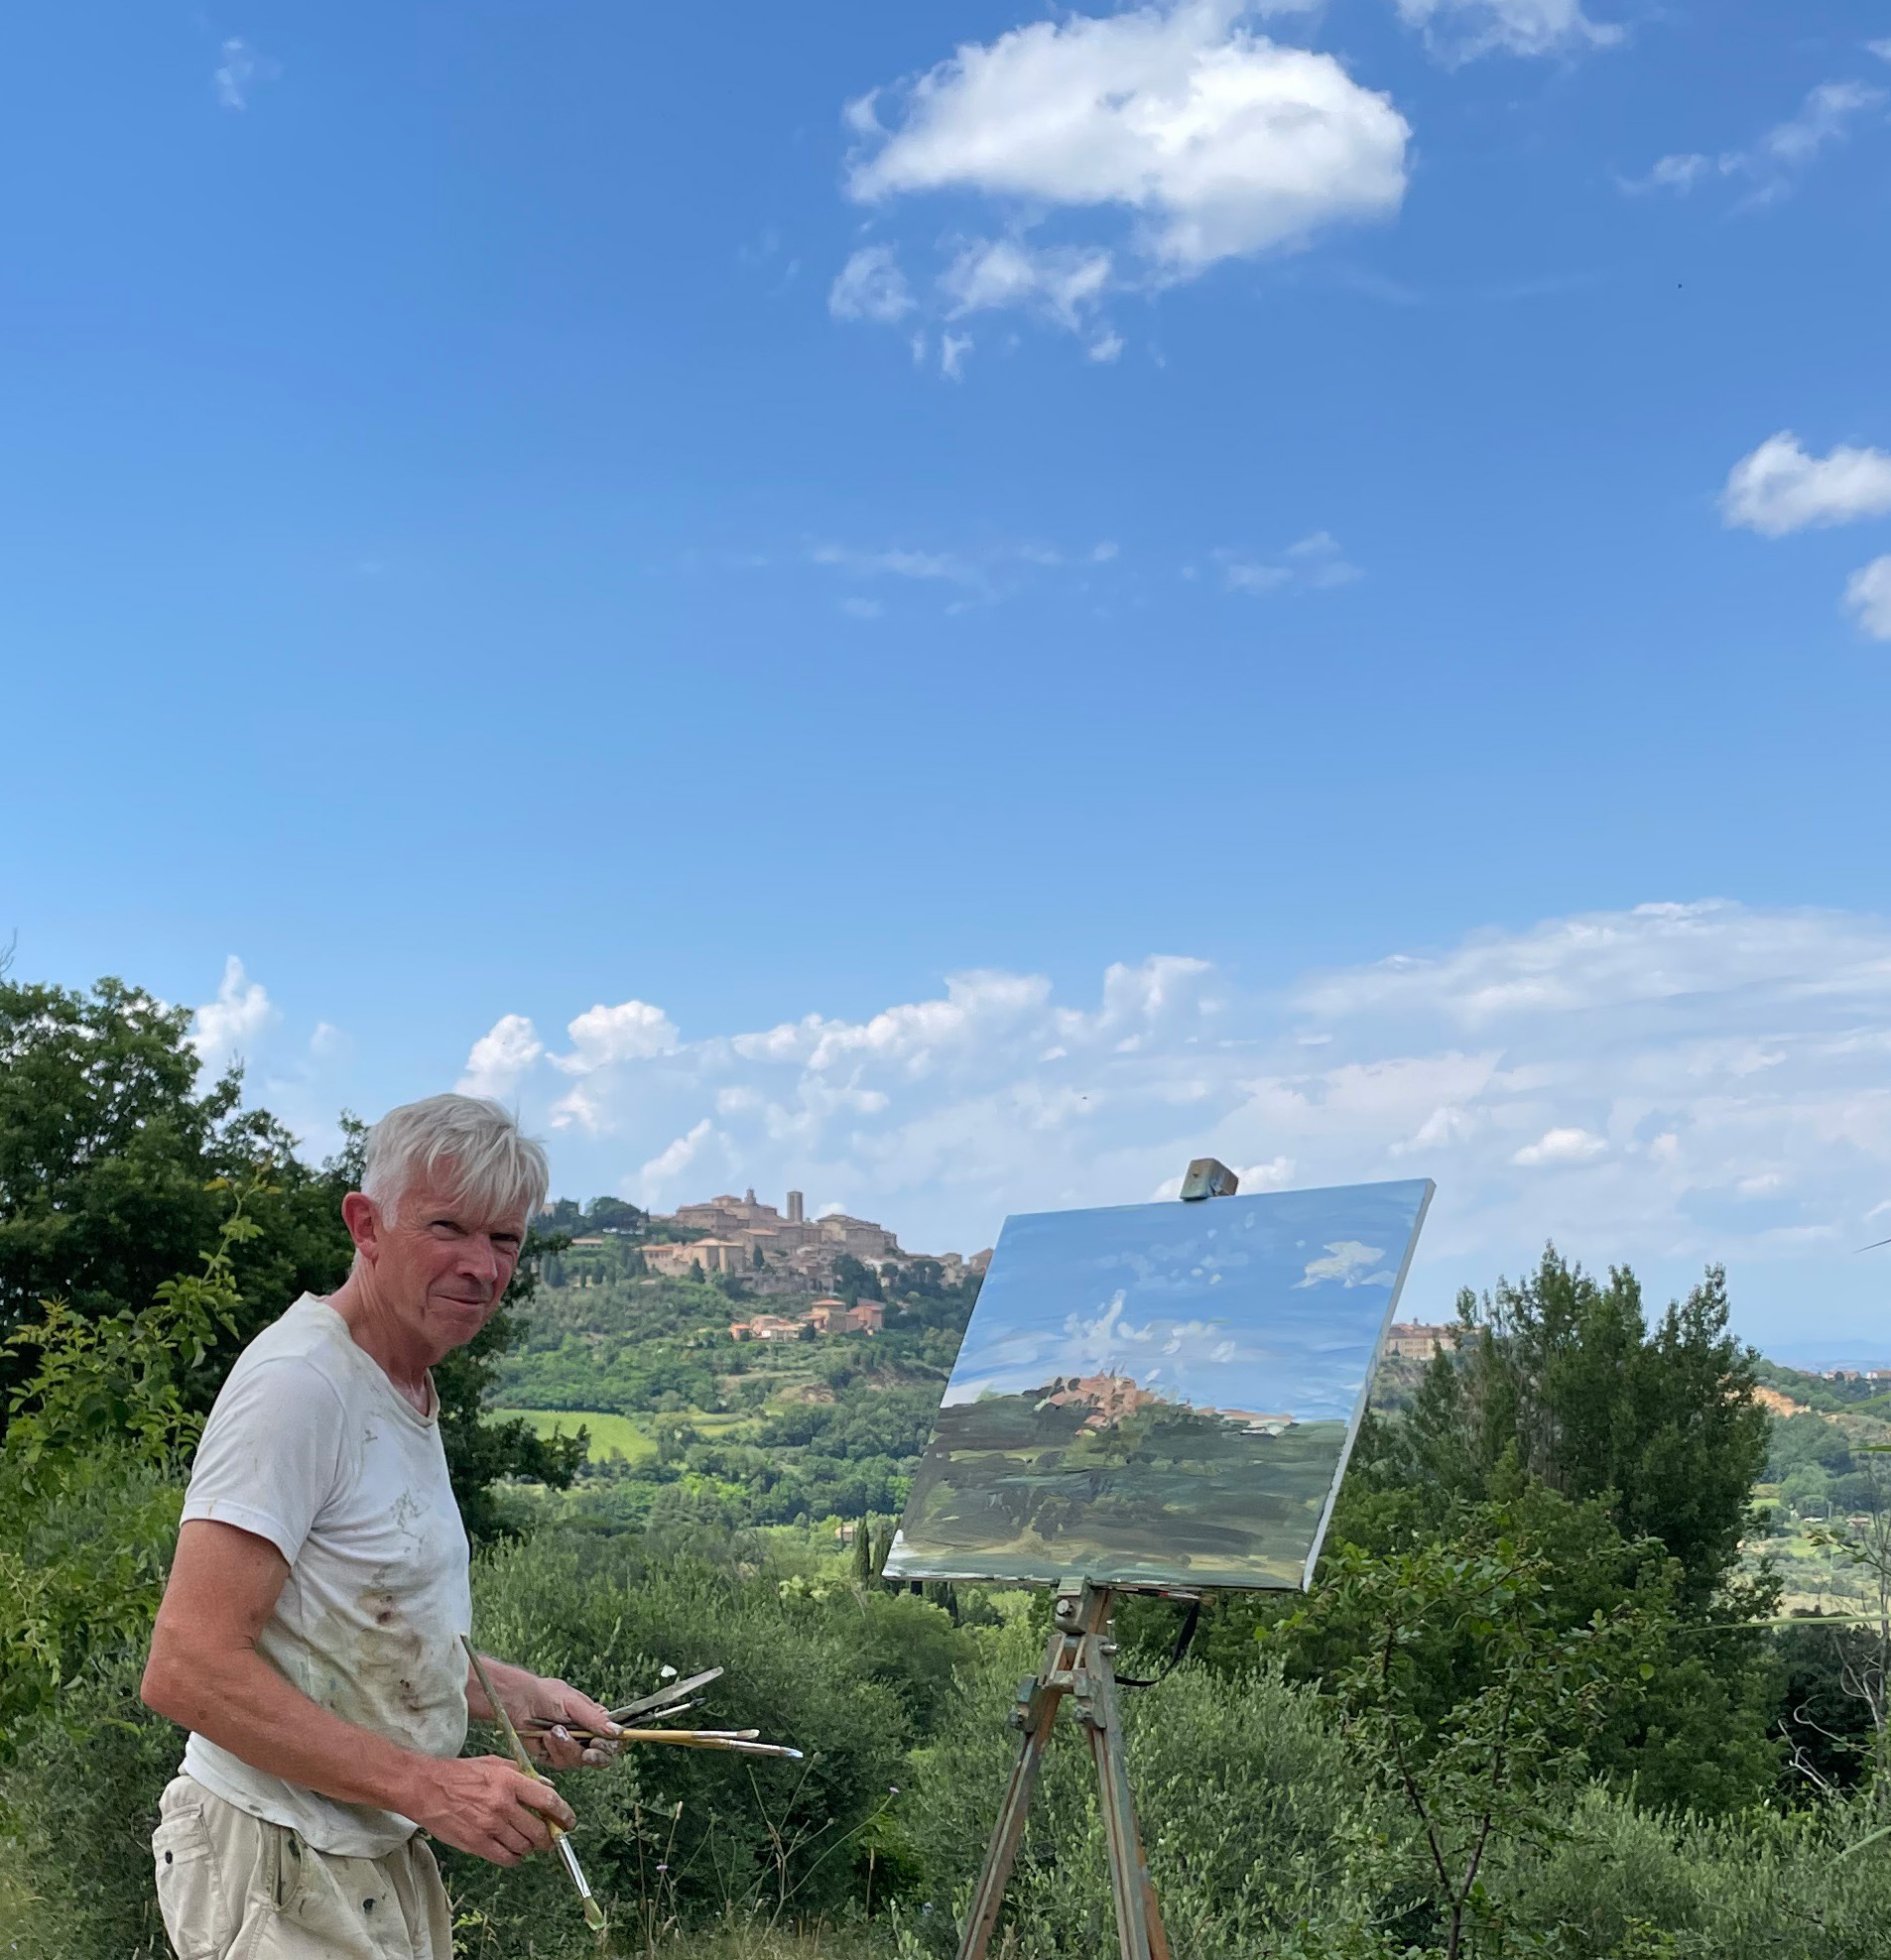 Richard Colson painting at Montepulciano, Tuscany